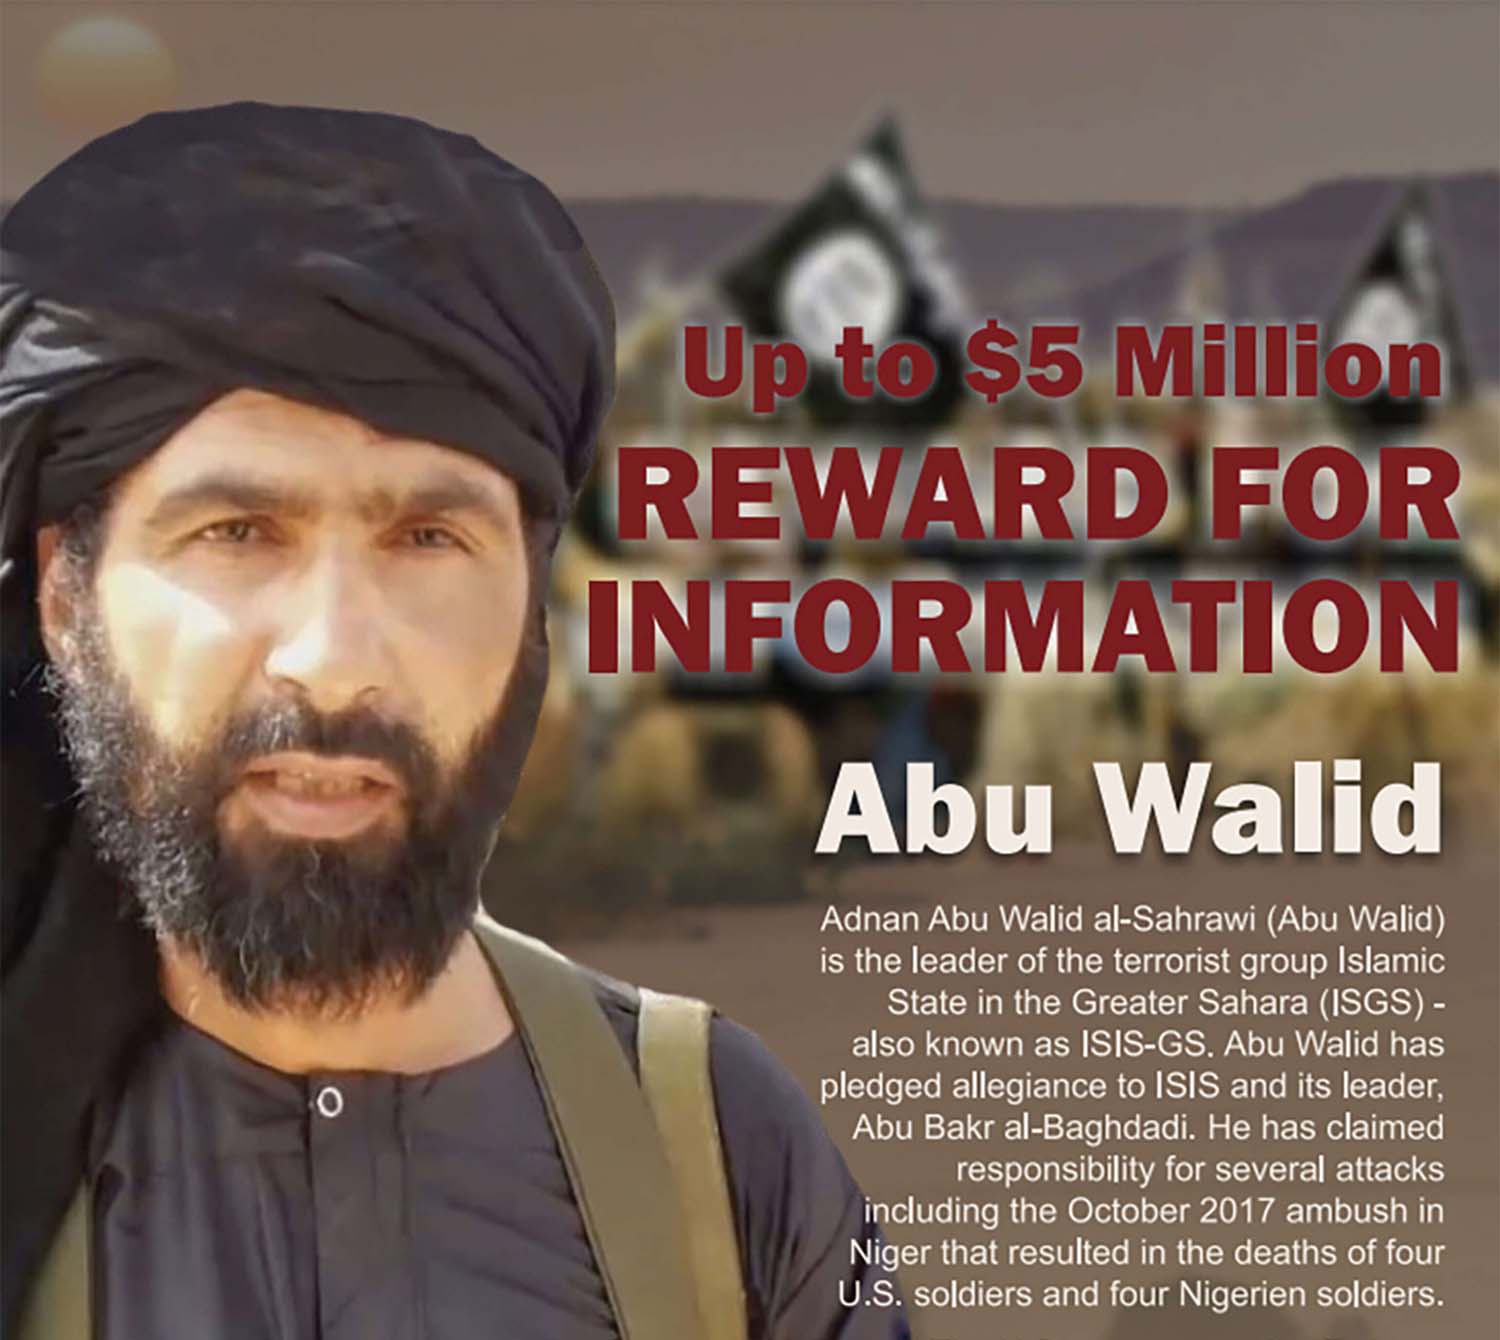 Adnan Abu Walid al-Sahrawi had claimed responsibility for a 2017 attack in Niger